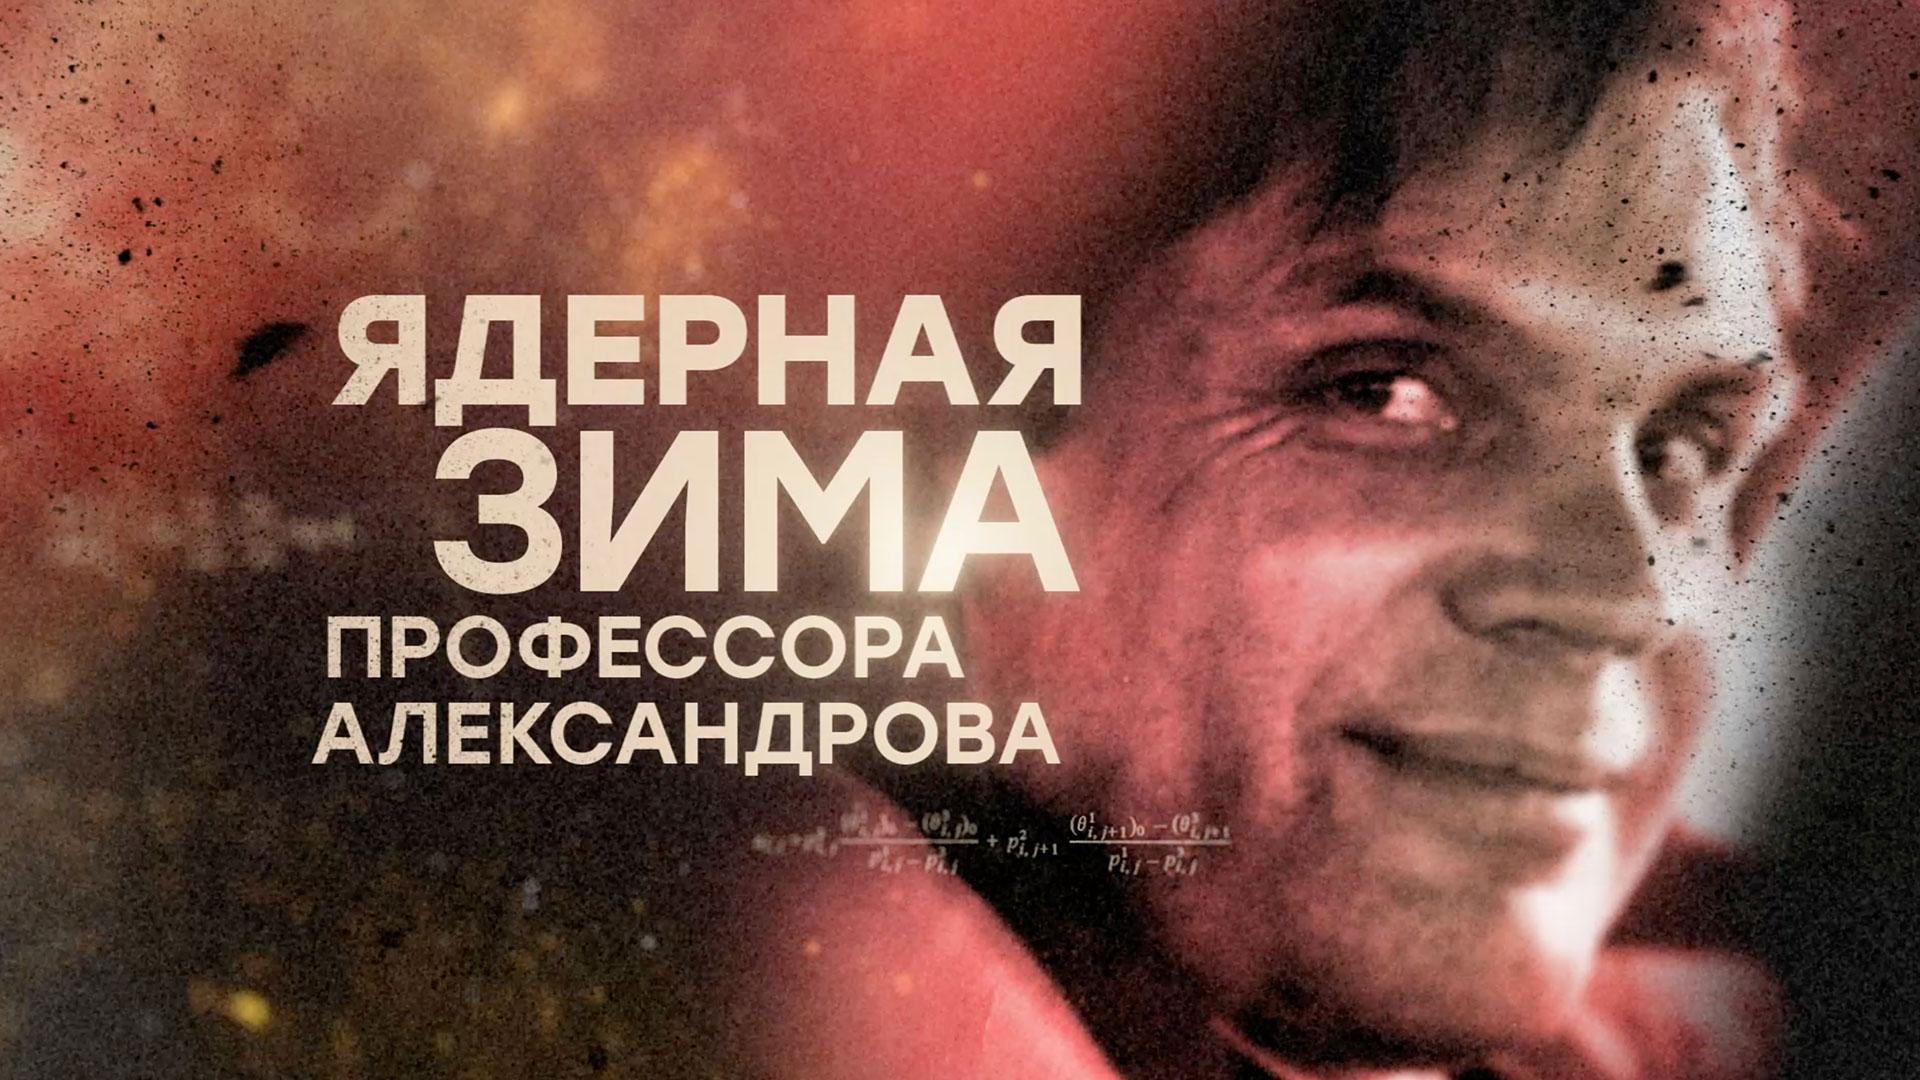 «Ядерная зима профессора Александрова» | Документальный фильм